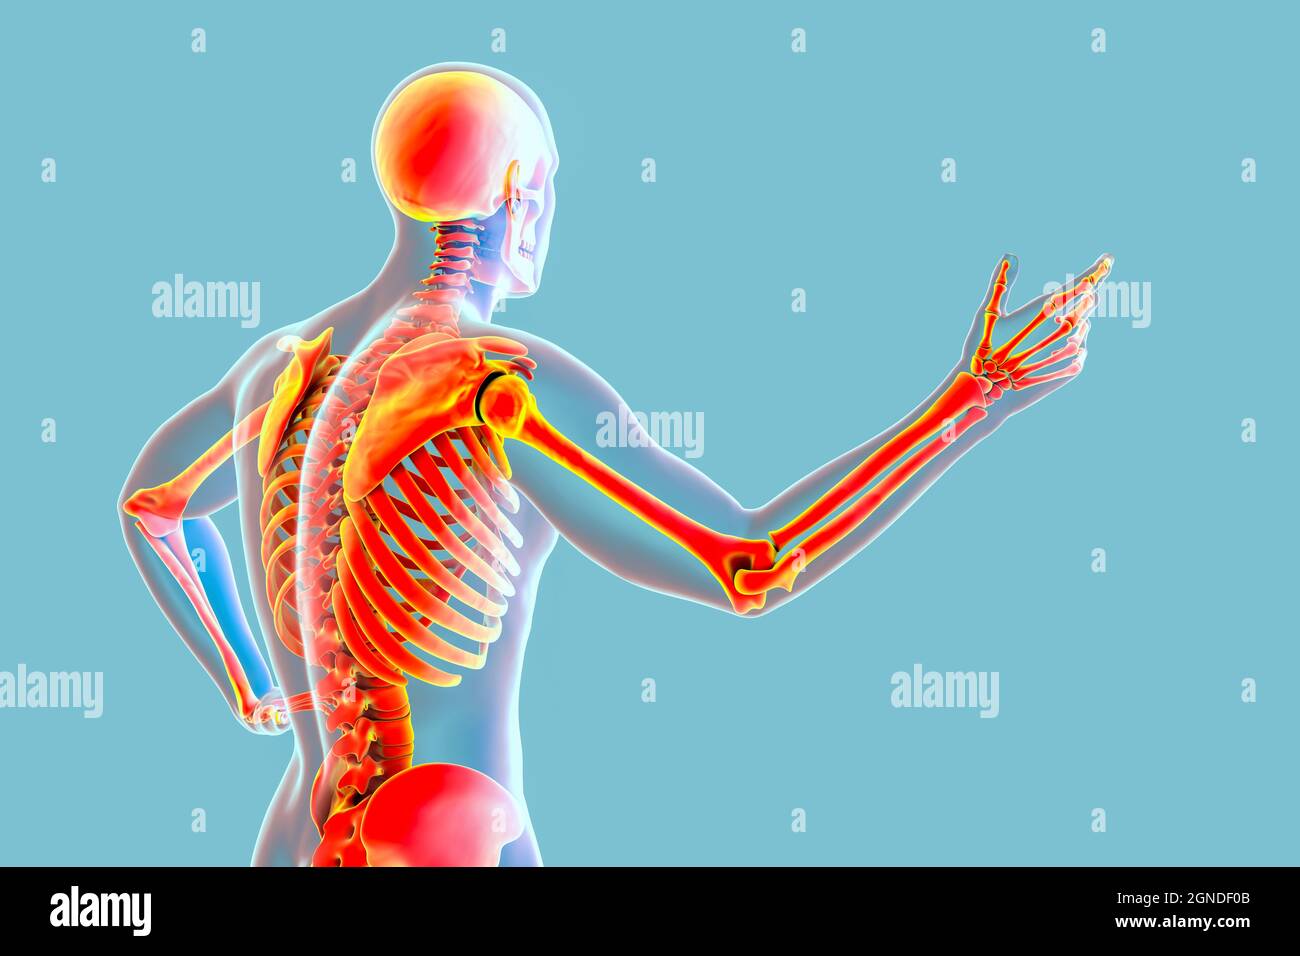 Human anatomy, illustration Stock Photo